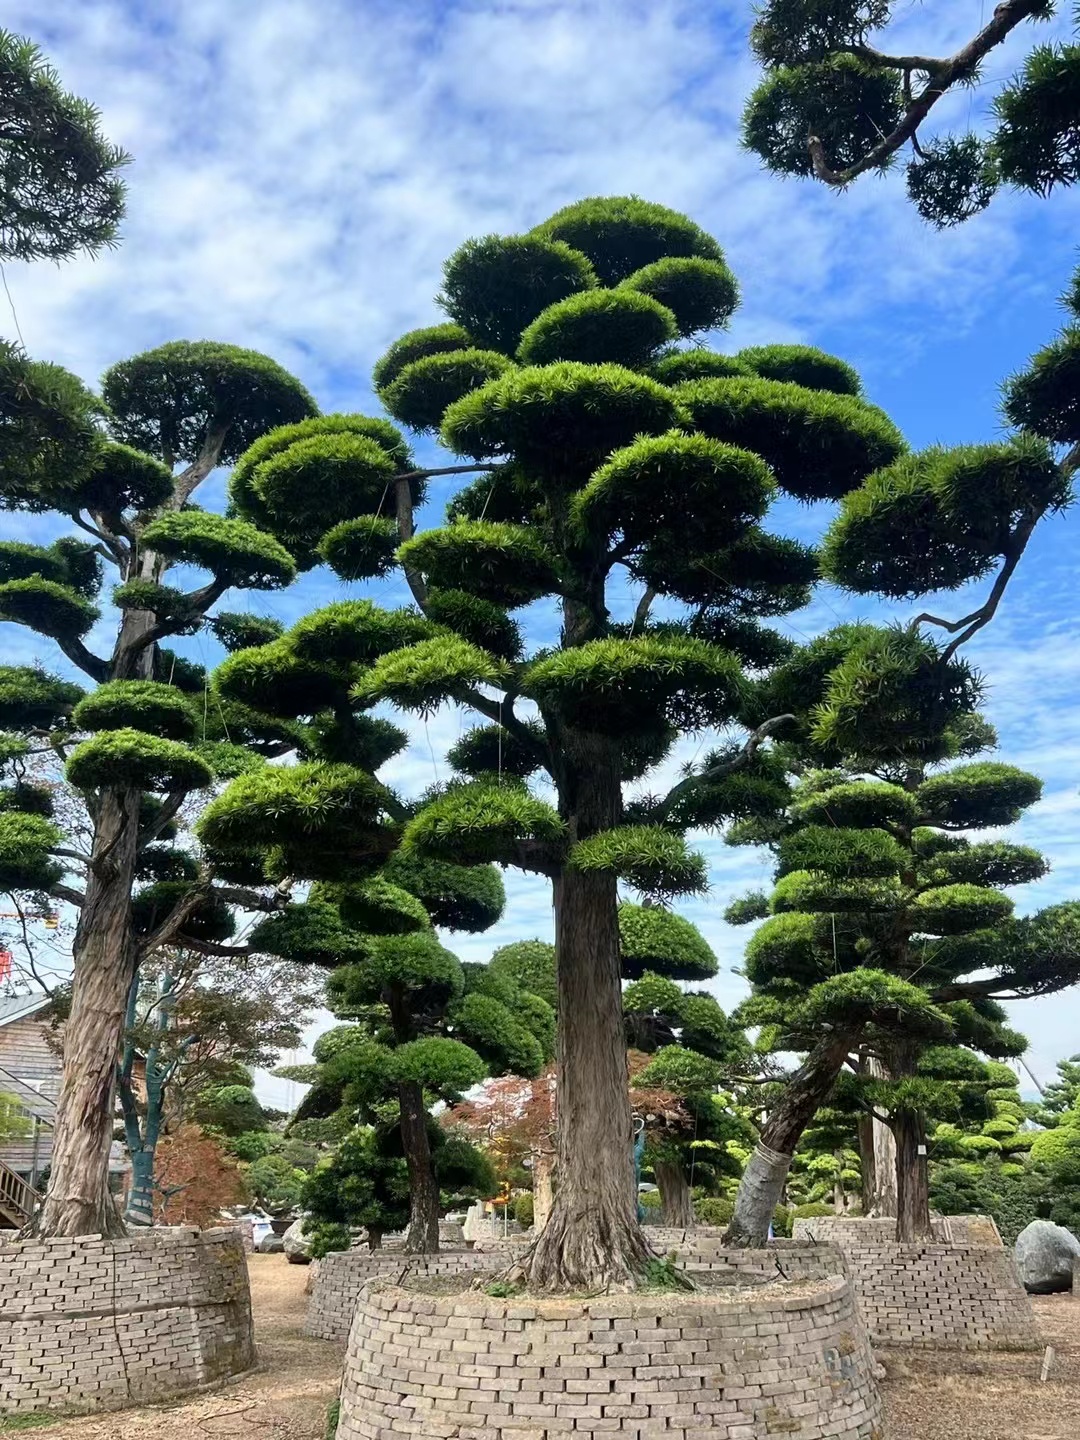 大型罗汉松大树庭院地景造型树日本黑松迎客松名贵盆景造型树别墅